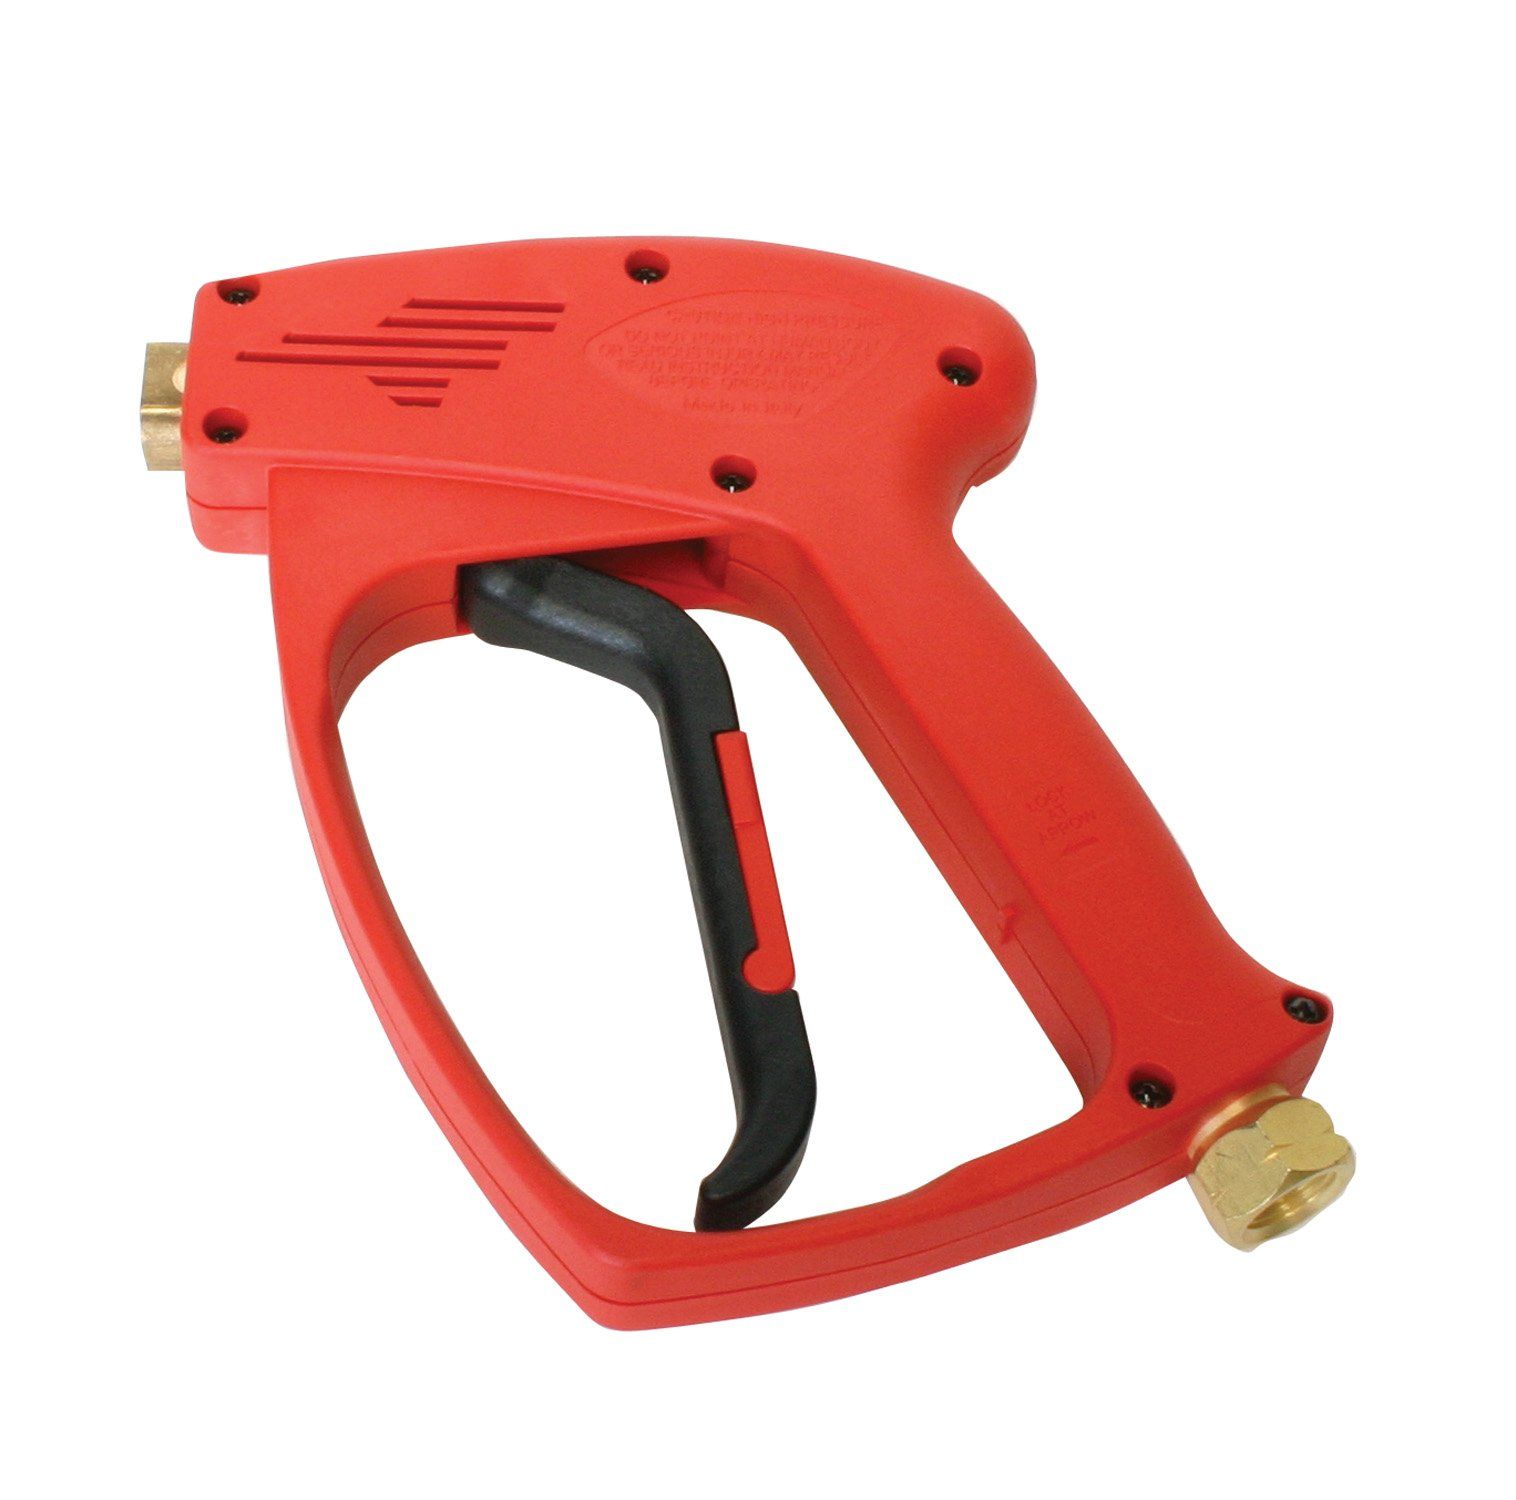 Red Hotsy Trigger Gun